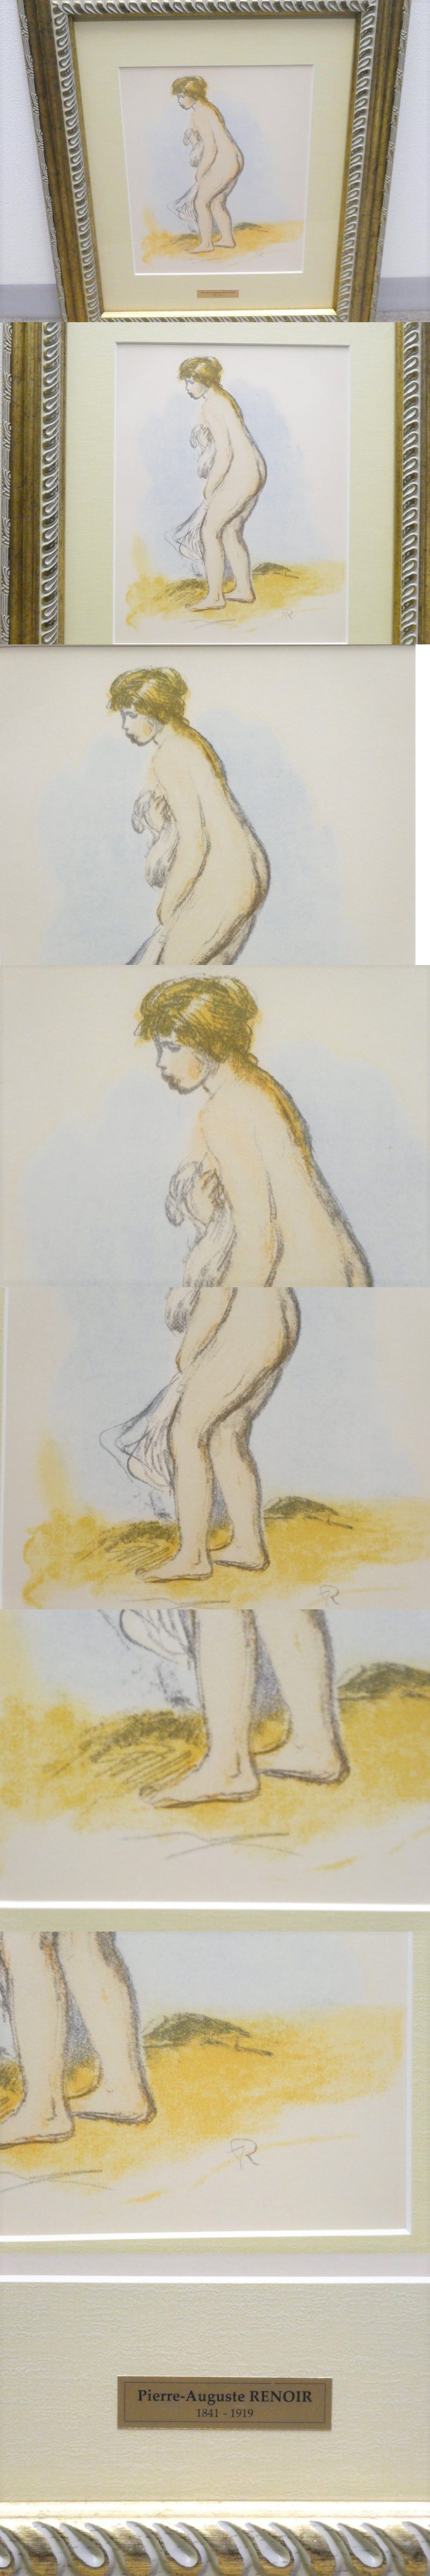 特価超激得D00588★ピエール＝オーギュスト・ルノワール（Pierre-Auguste Renoir）『水浴する裸婦』/ 版上イニシャルサイン 1951 絵画 石版画、リトグラフ